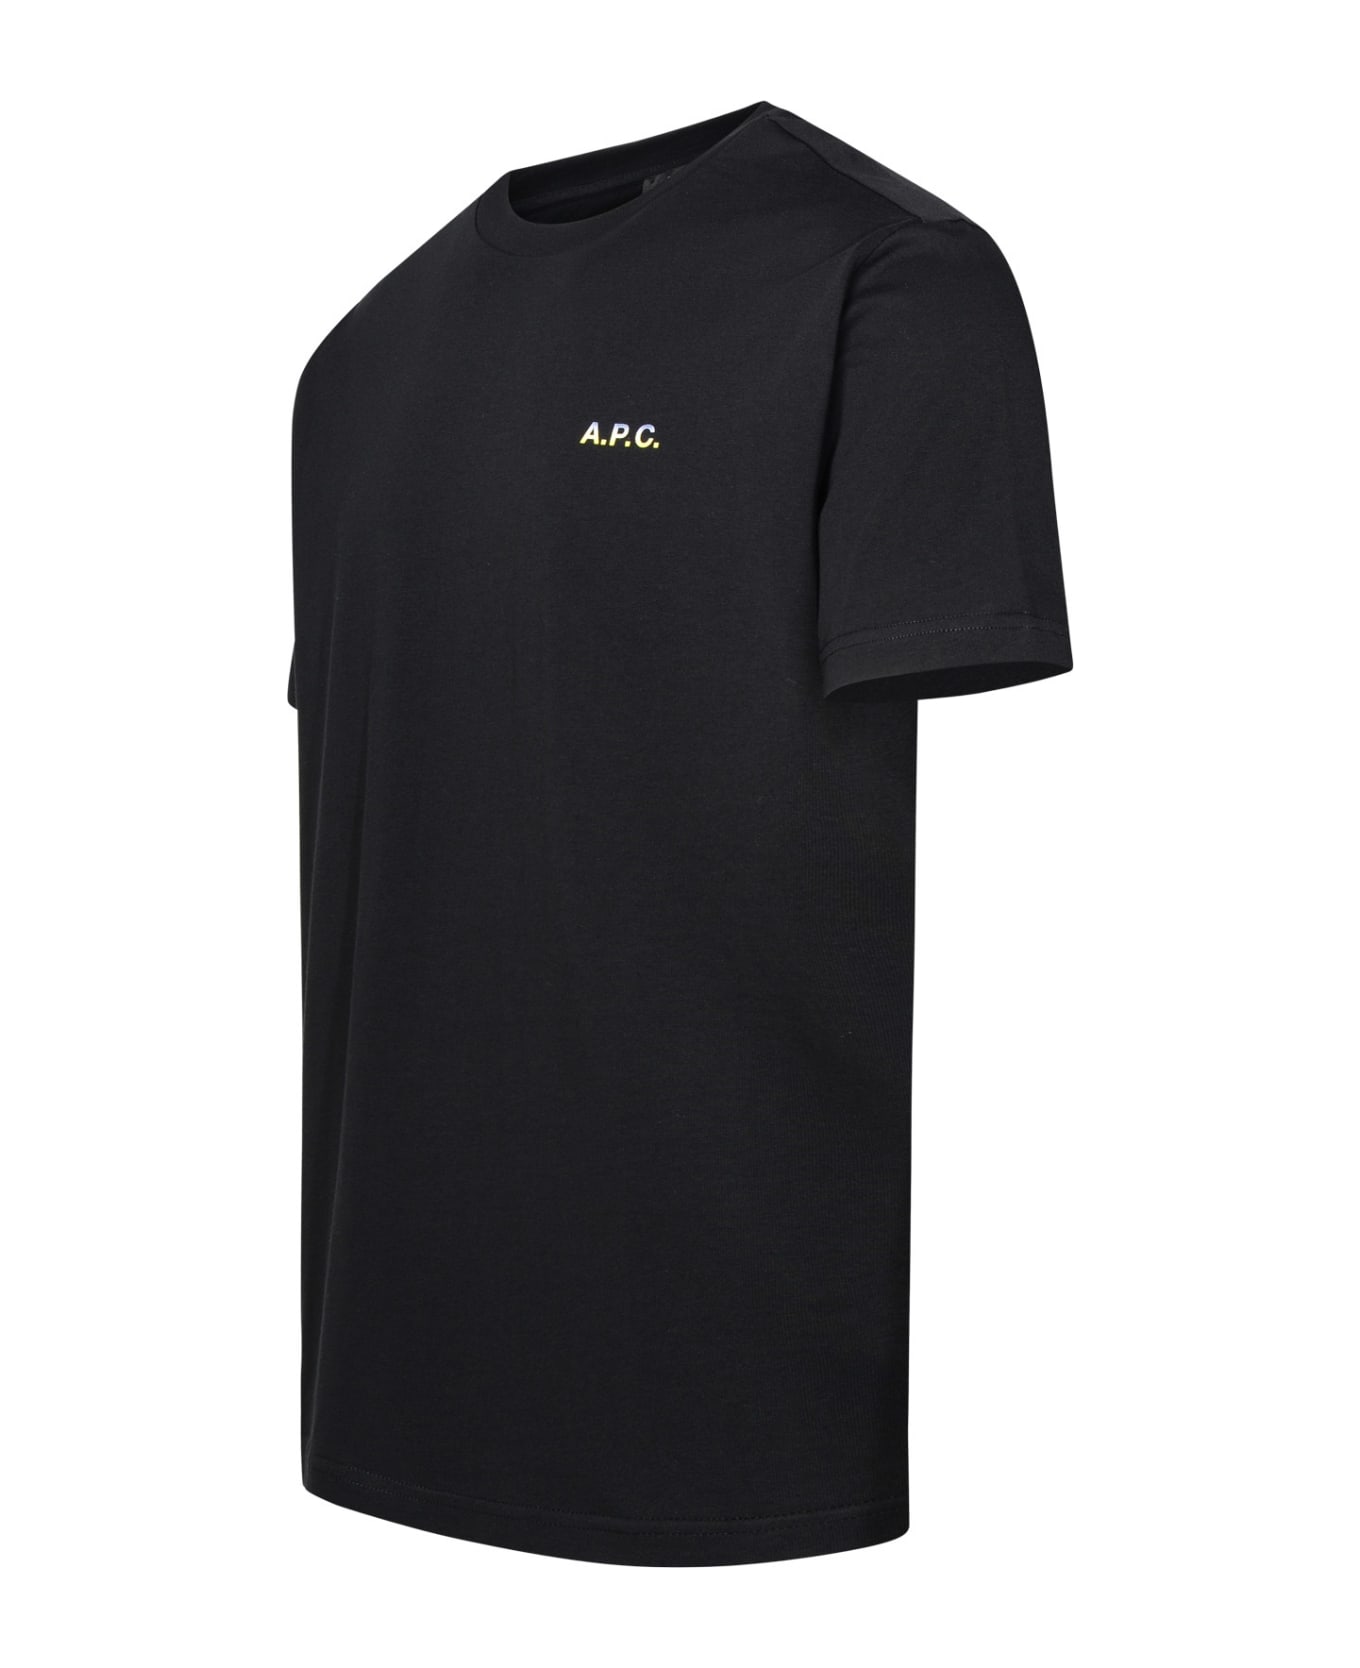 A.P.C. Black Cotton T-shirt - Black シャツ